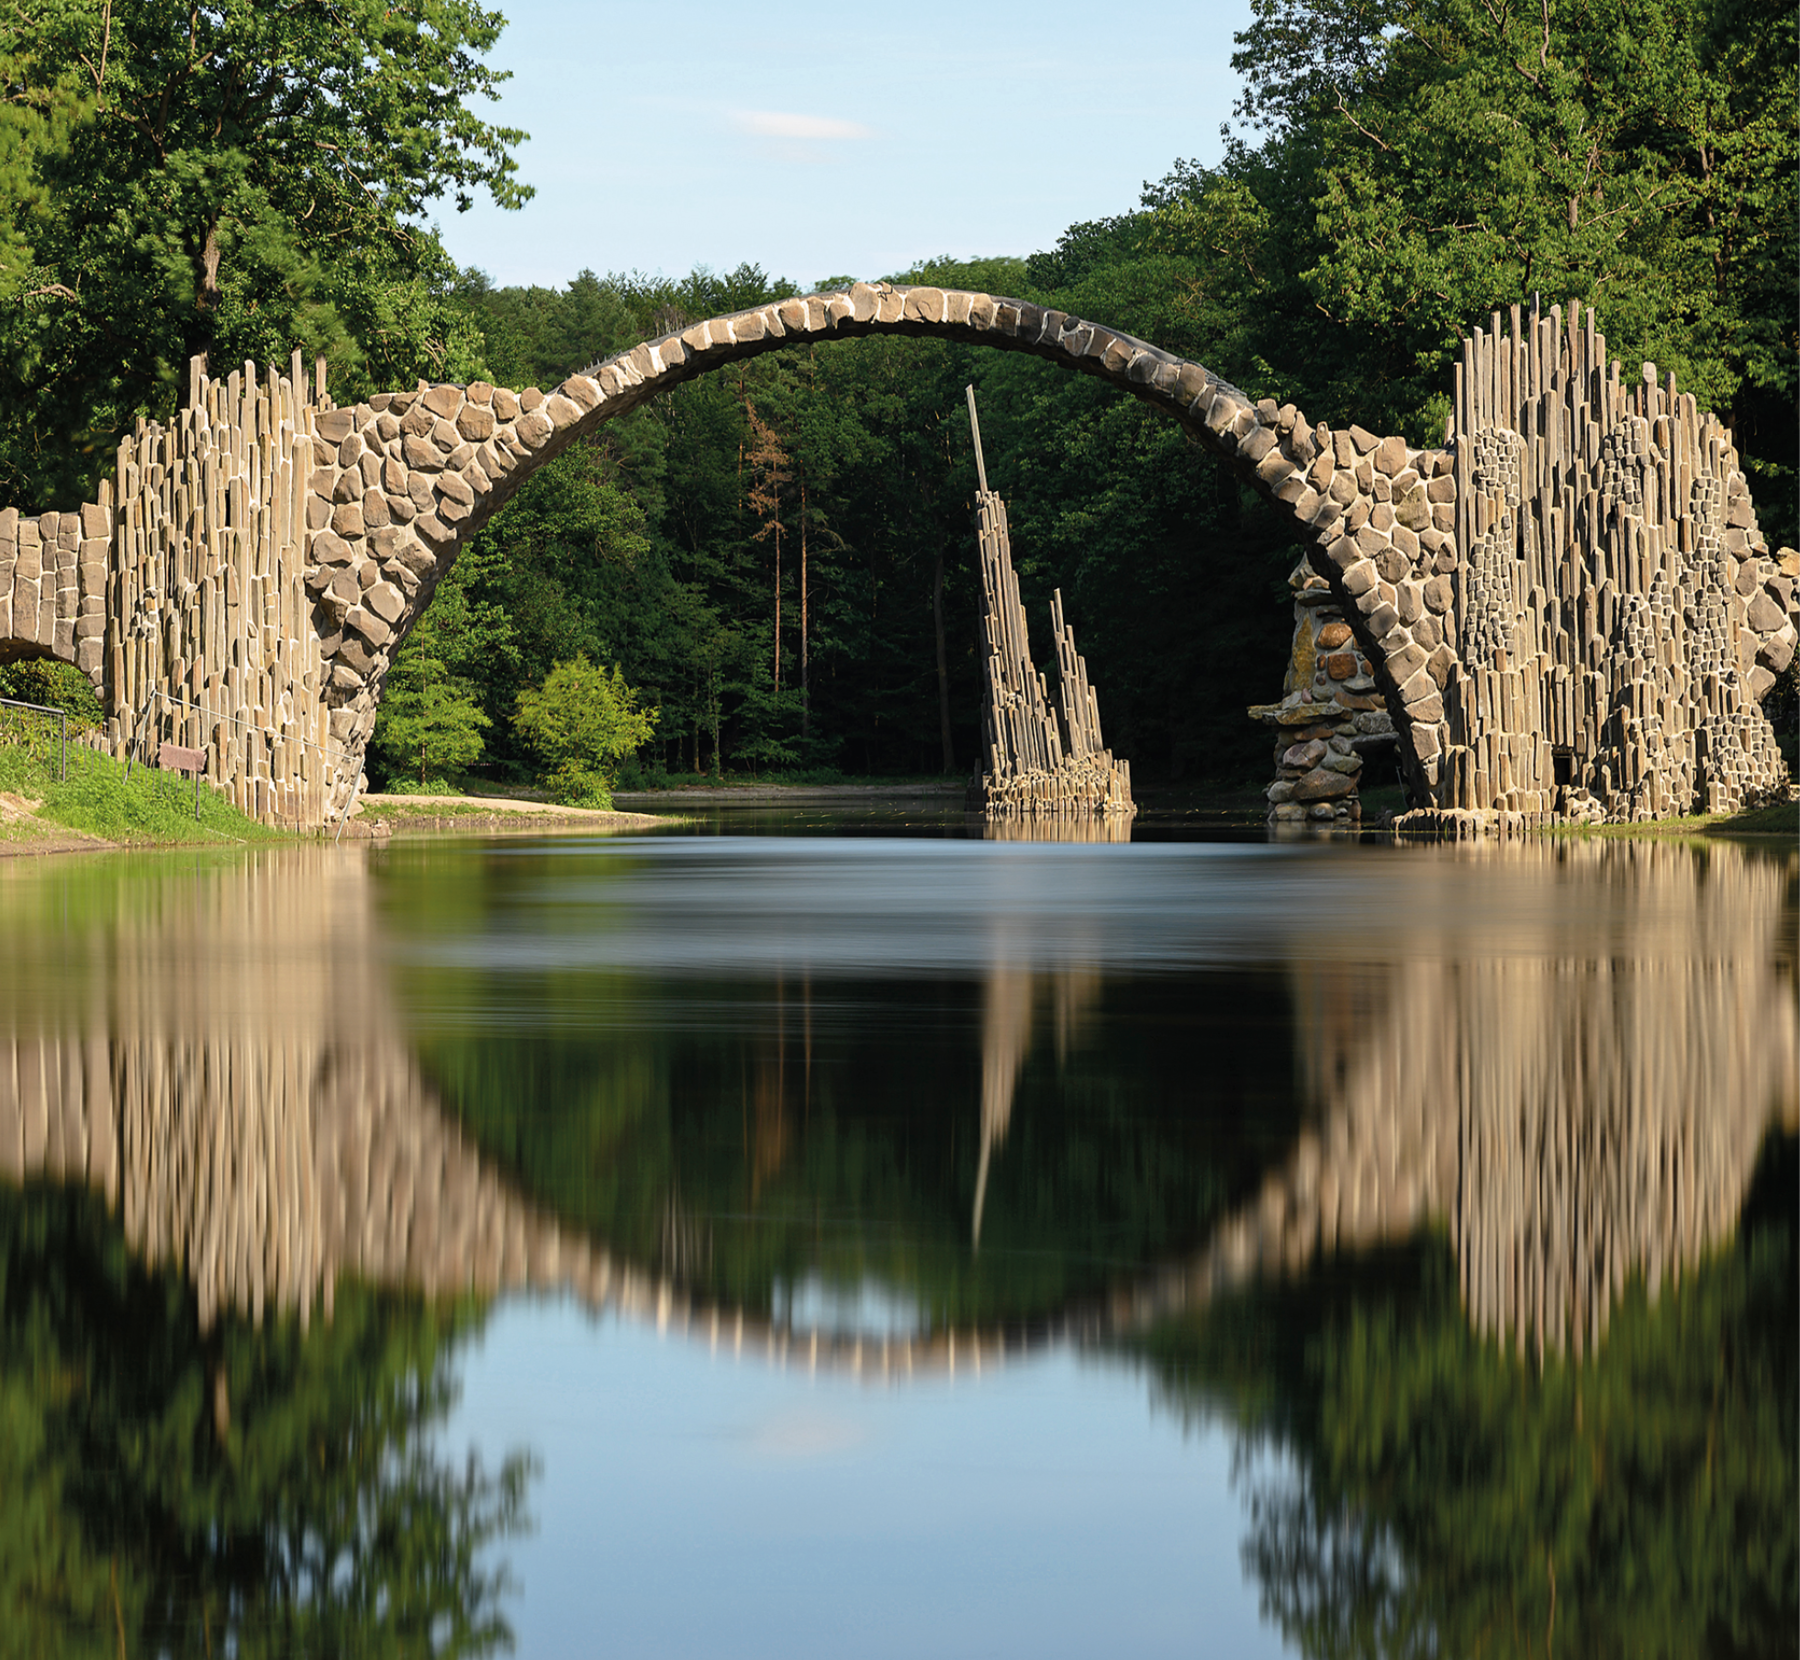 Fotografia.  Ponte do Diabo composto por pedras em formato de arco sobre um rio. No rio, abaixo da ponte, estrutura com hastes de tamanhos diferentes. Ao redor, vegetação e árvores.